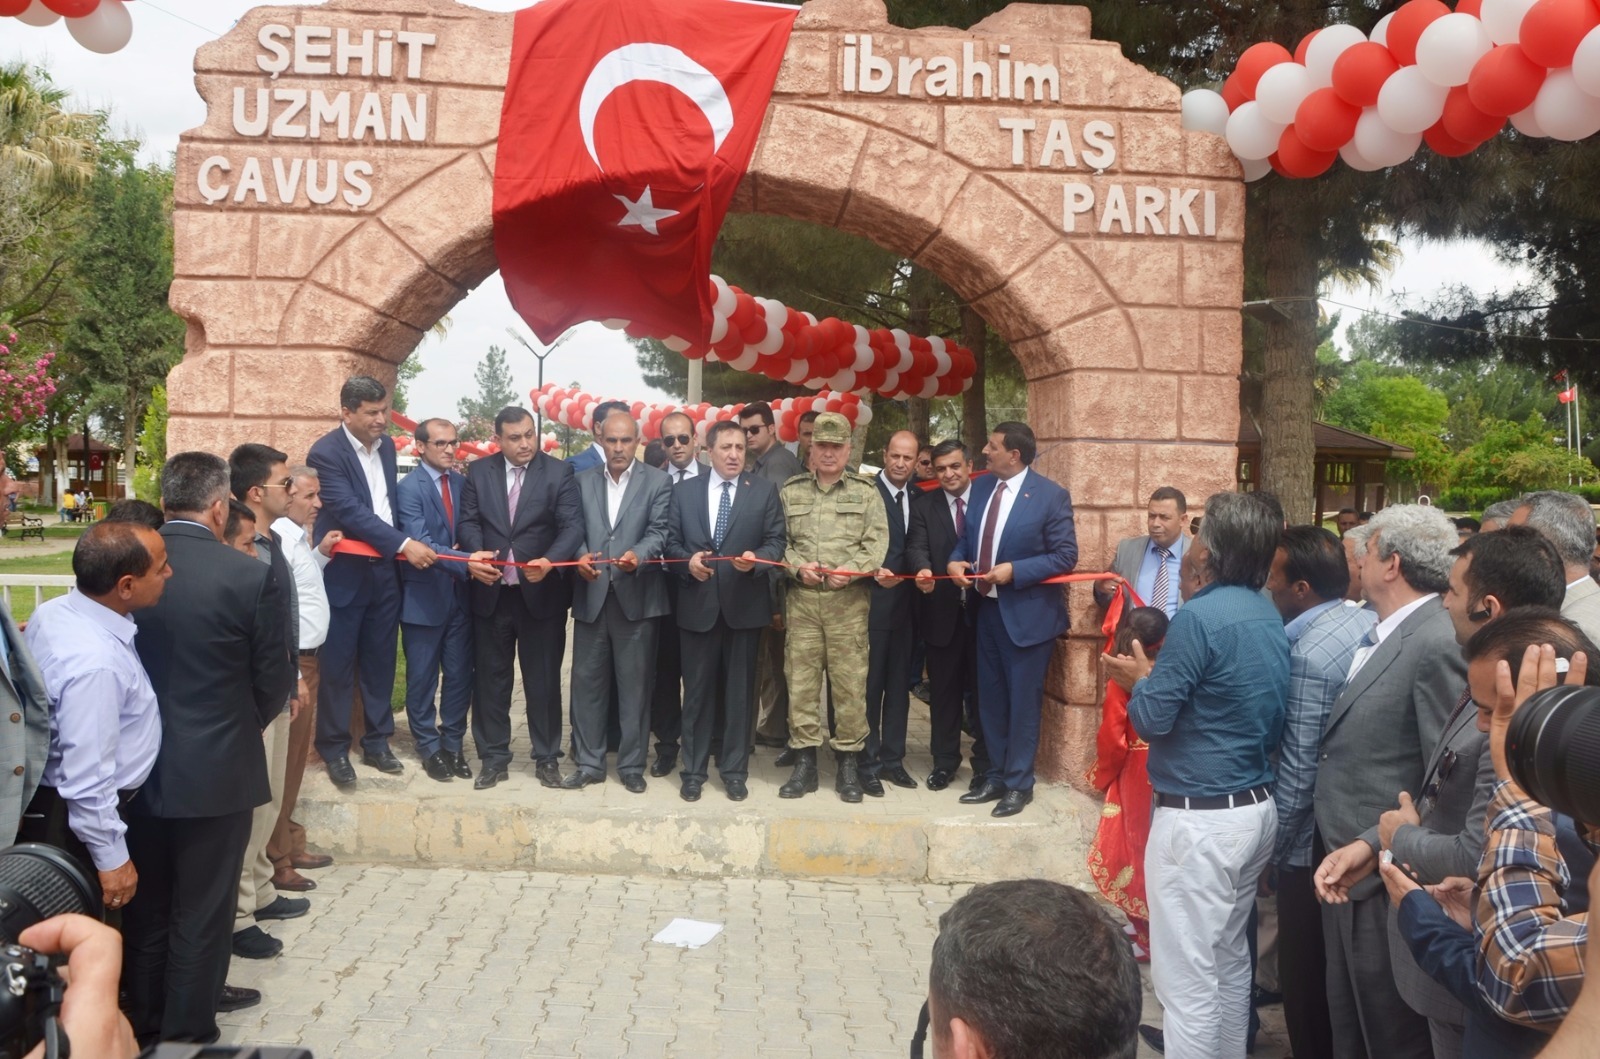 Harran'da şehit İbrahim Taş parkı açıldı